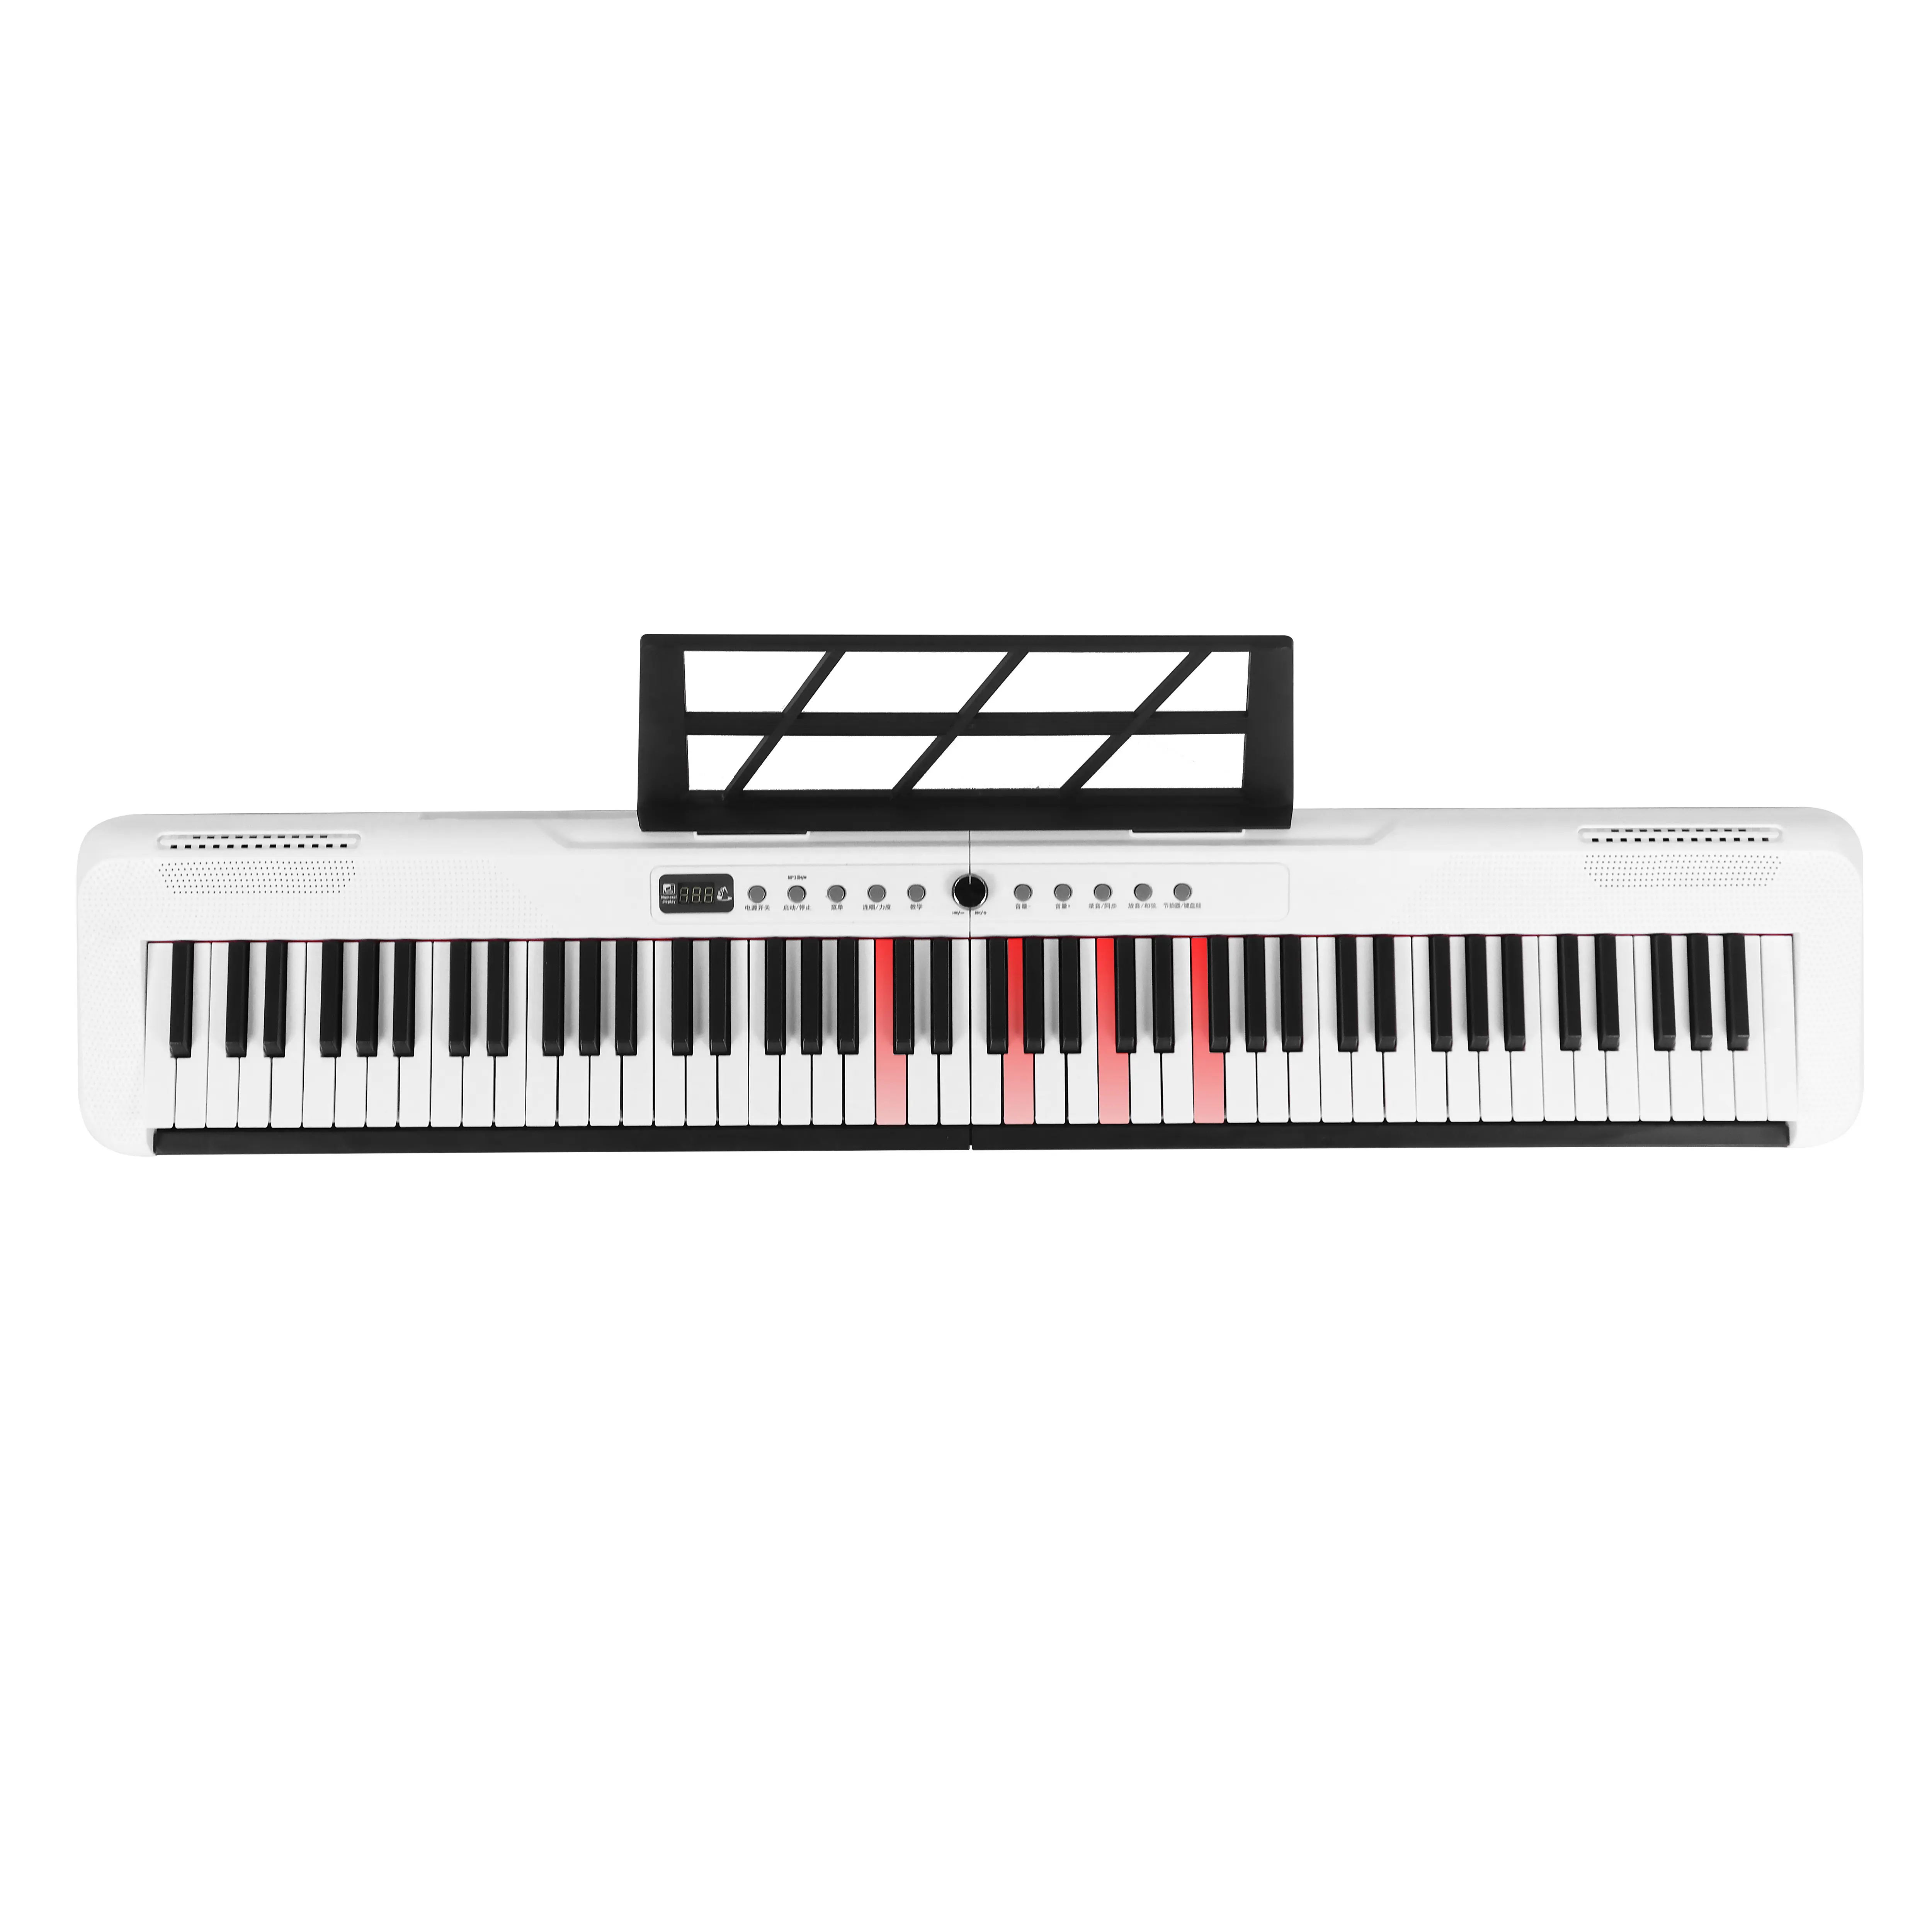 Meilleur prix 88 touches débutants jouet piano clavier électronique synthétiseur teclados orgue électronique avec éclairage et MIDI